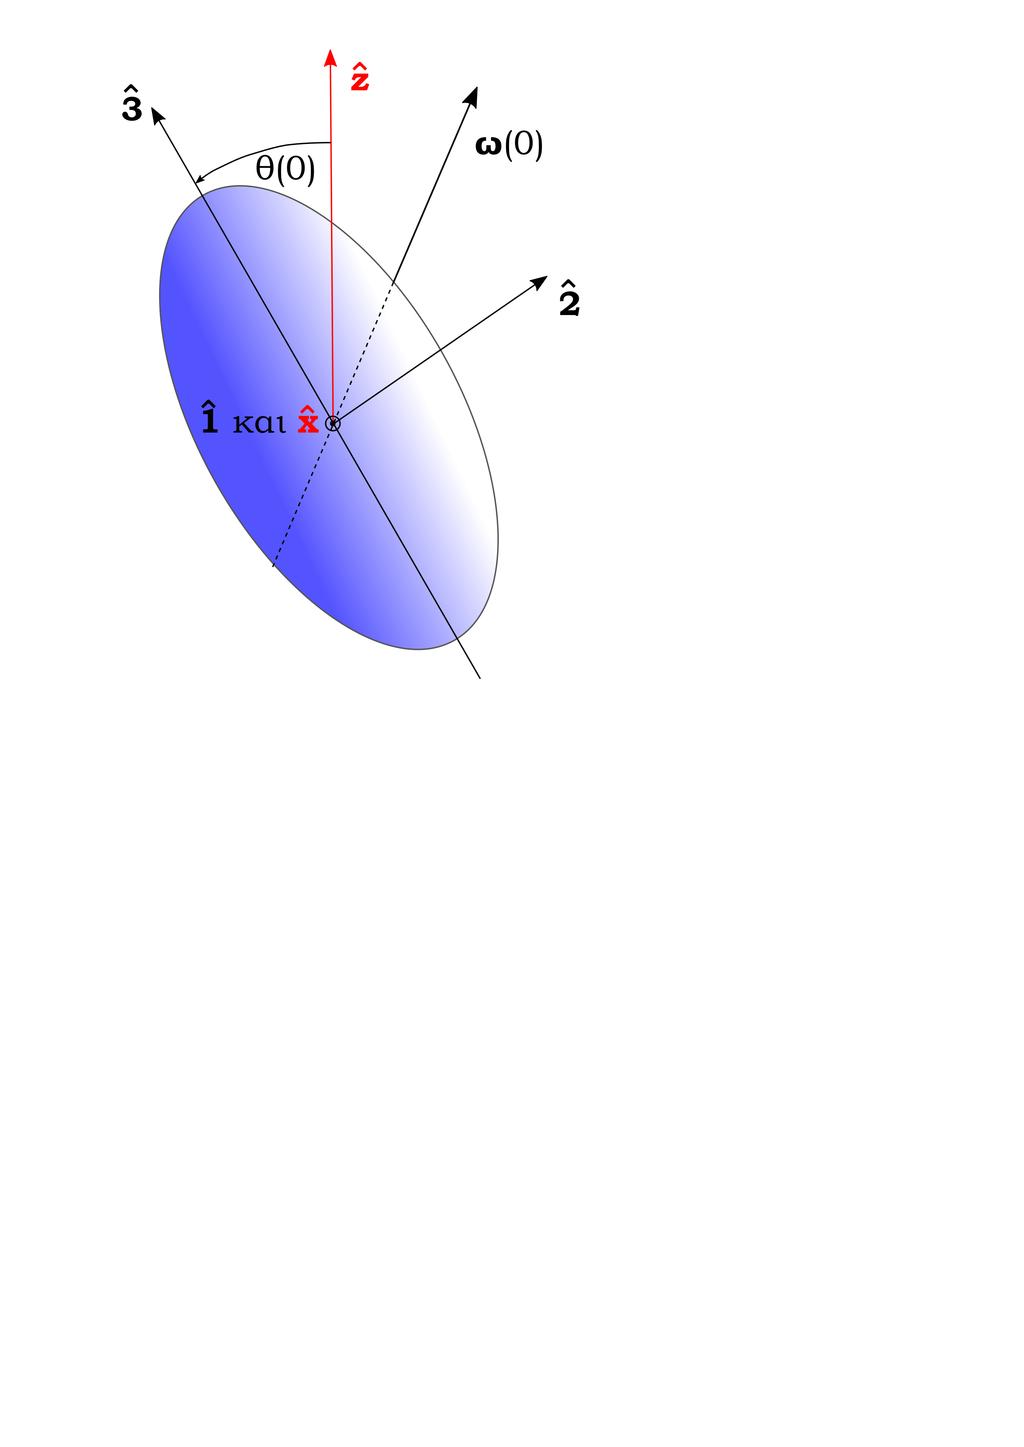 Για να υπολογίσουμε τη χρονική εξέλιξη των τριών αυτών γωνιών του Euler θα στήσουμε ένα καρτεσιανό τρισορθογώνιο σύστημα x y z και θα μετρήσουμε τη στροφή του στερεού ως προς αυτό.